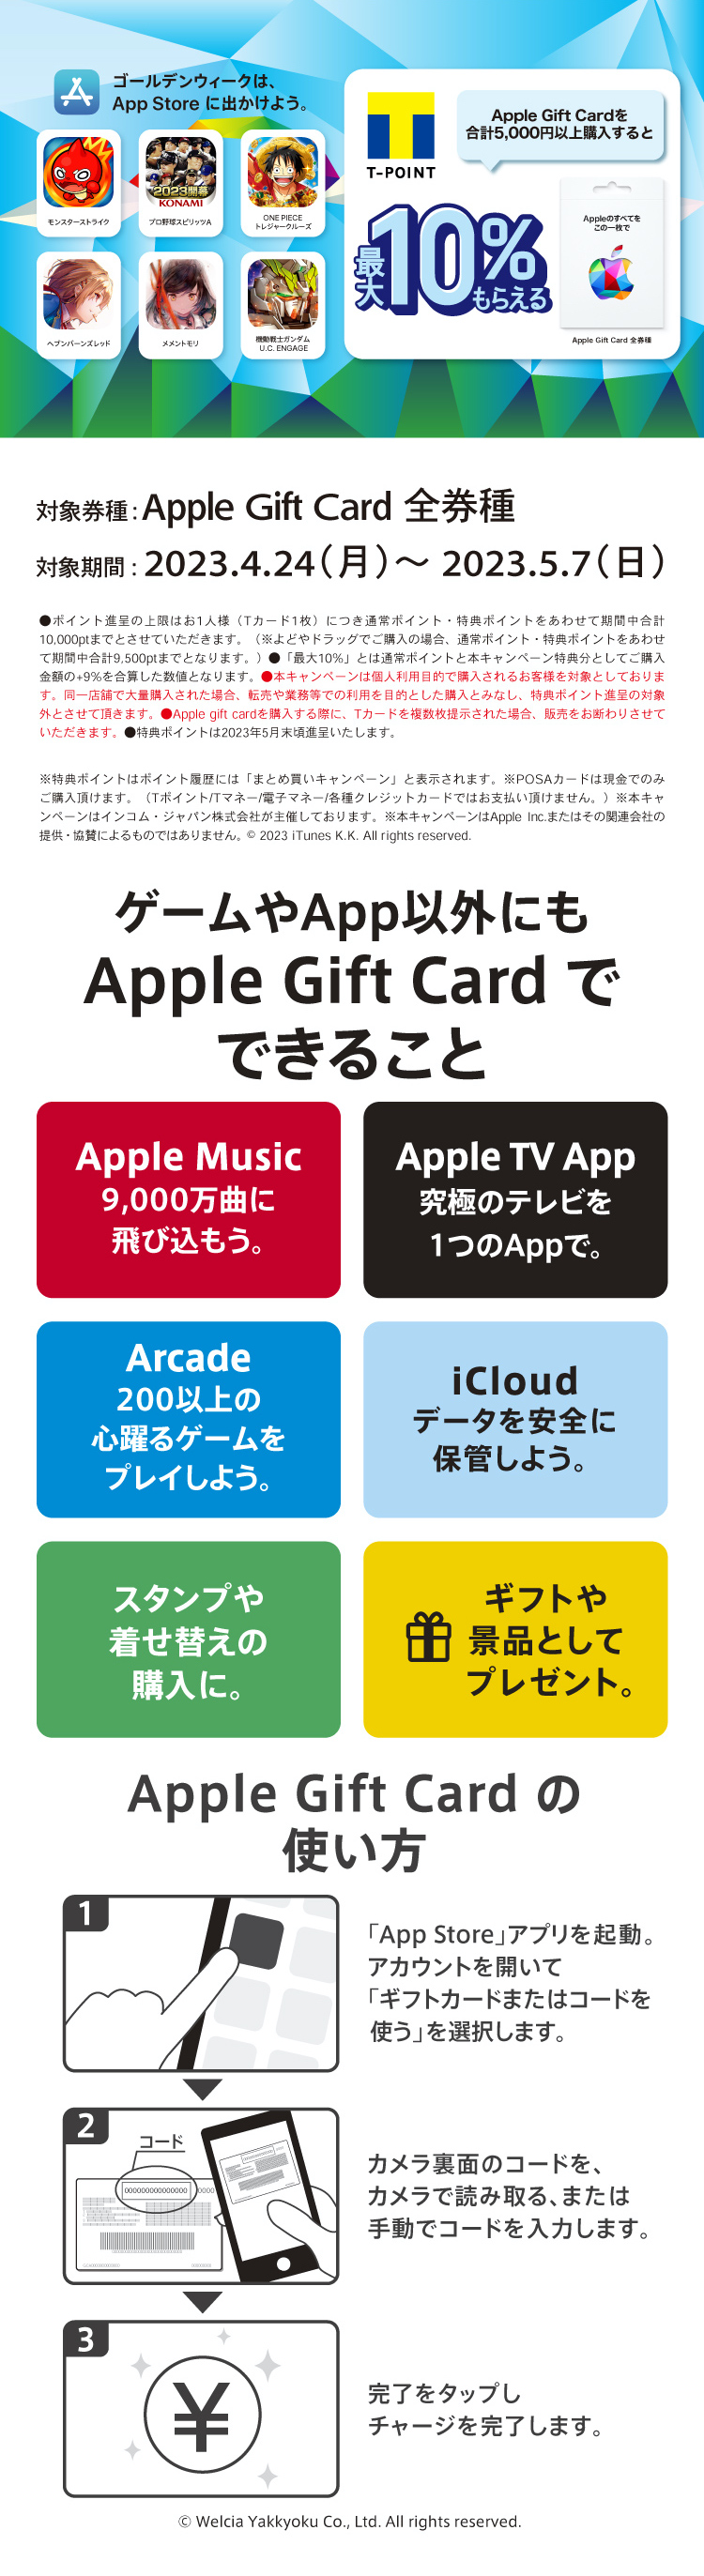 Apple Gift Cardを合計5,000円以上購入するとTポイント最大10%もらえる